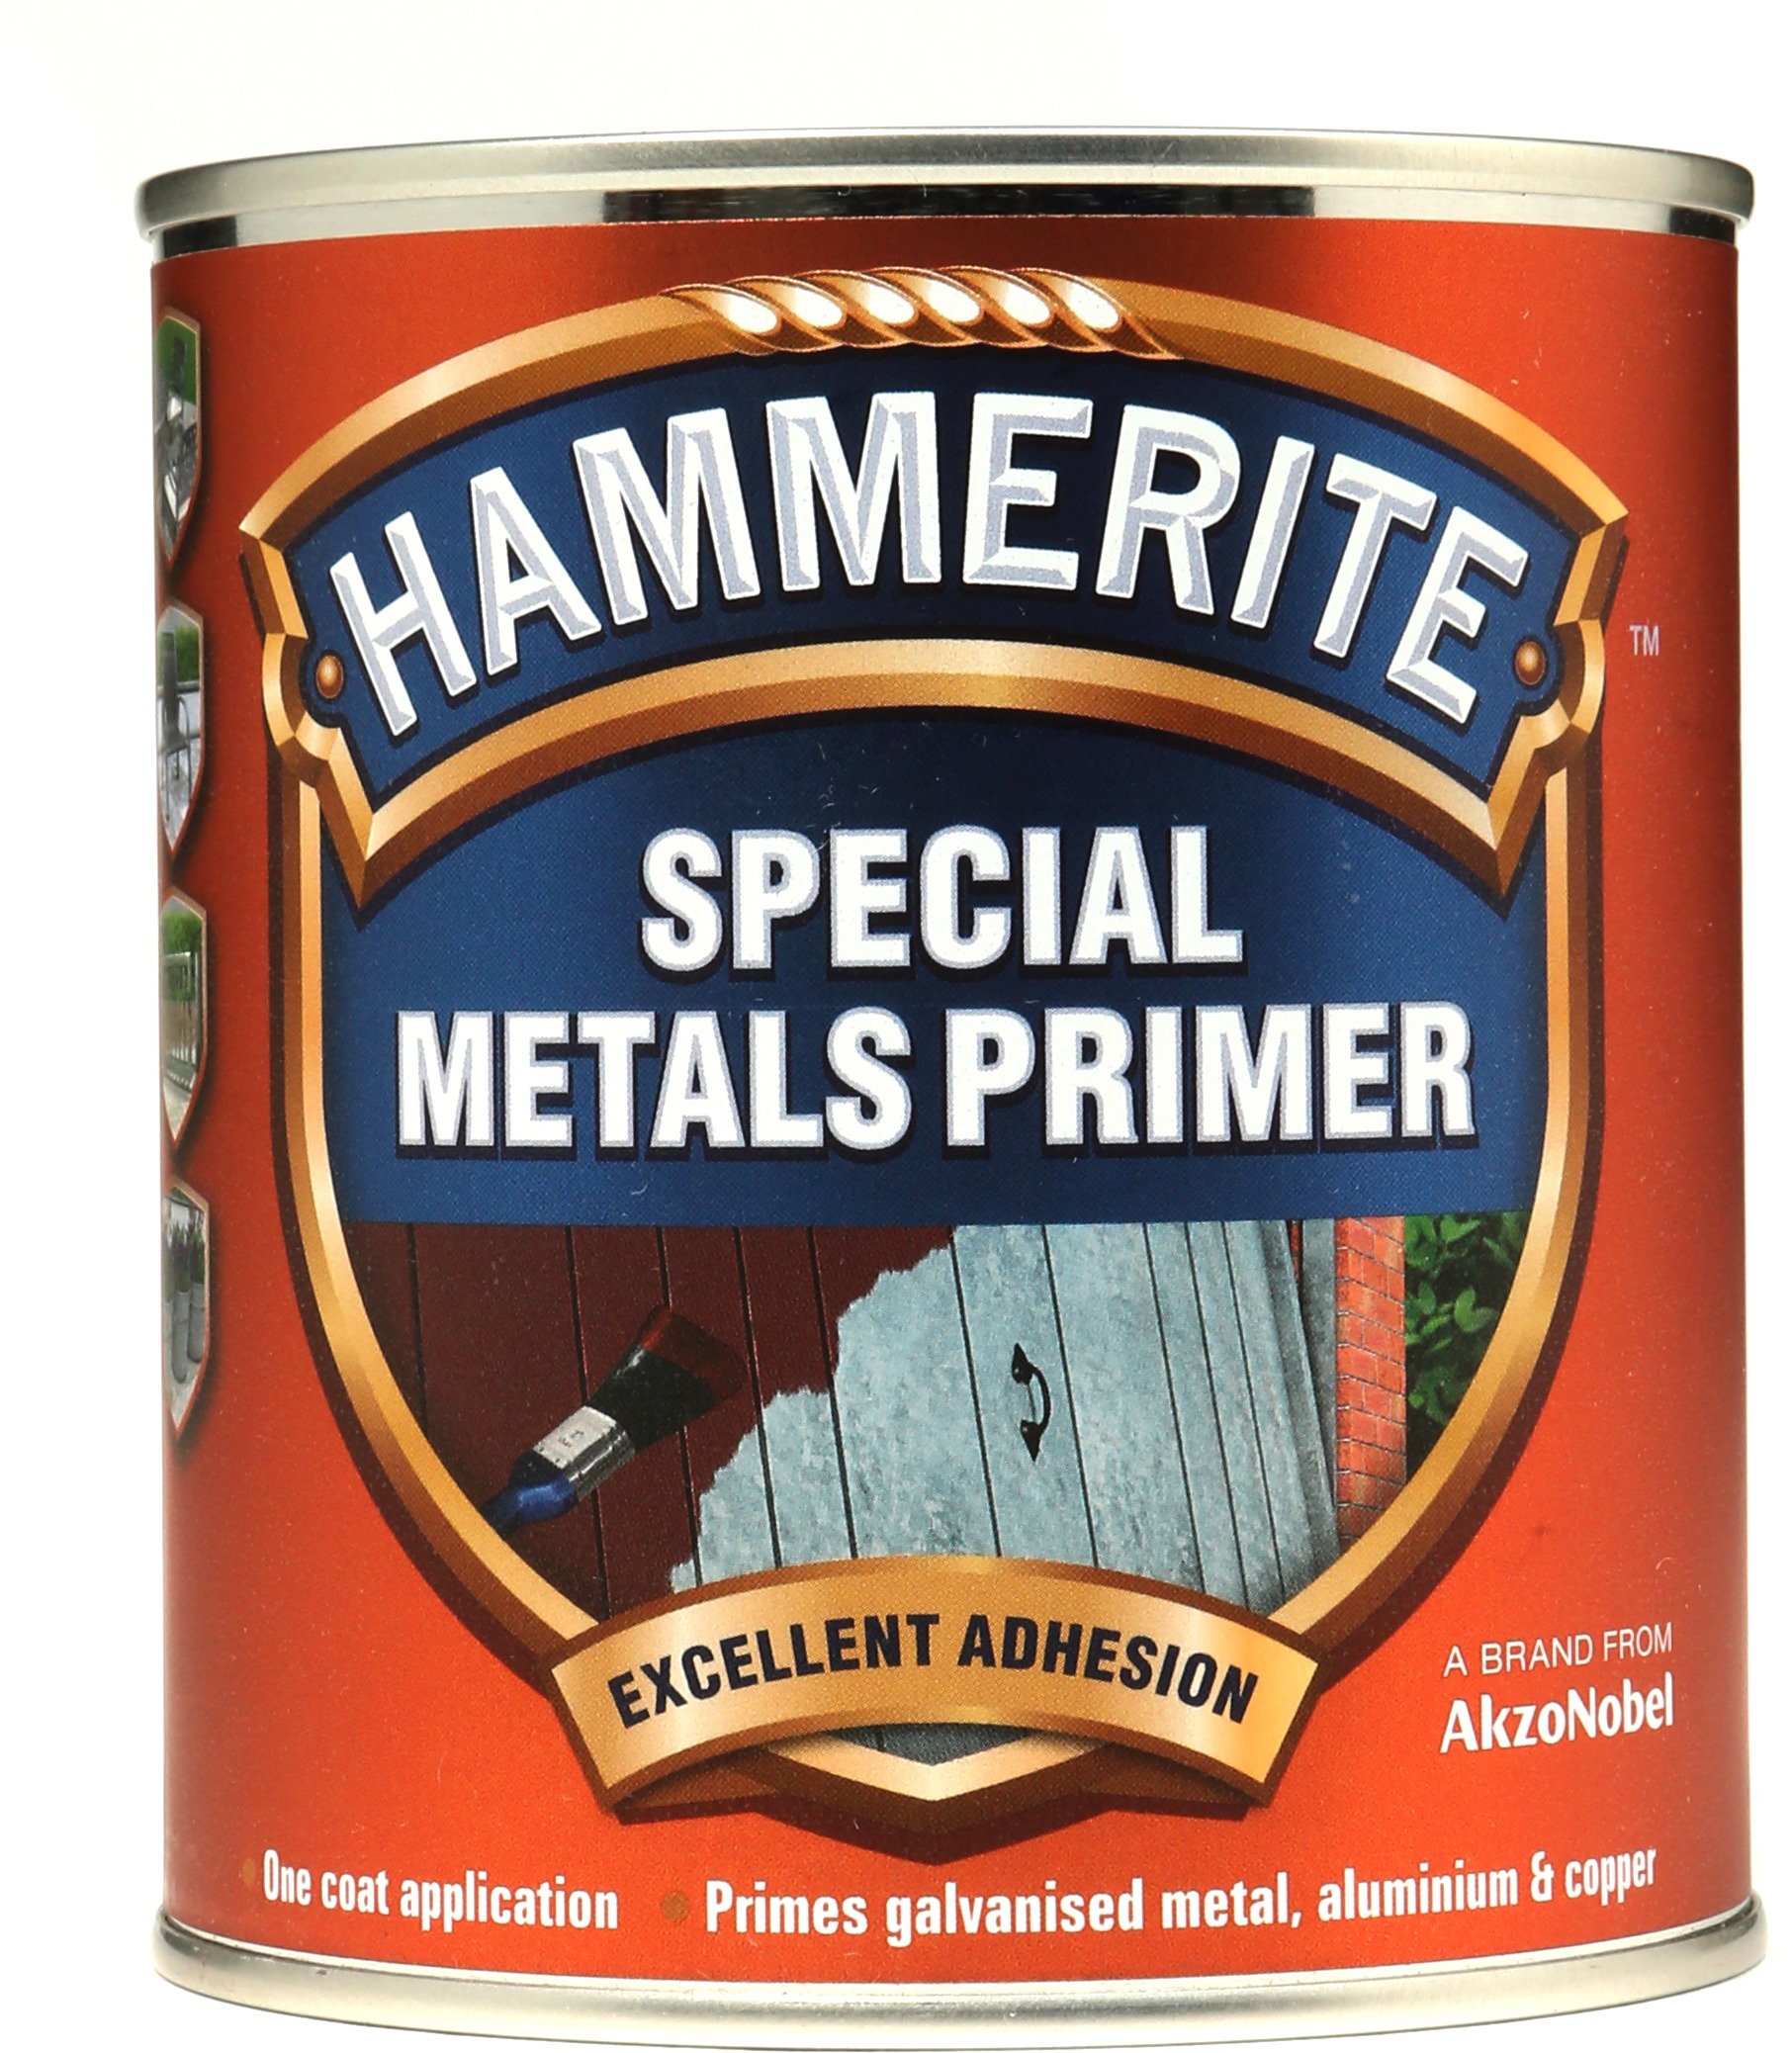 www.hammerite.co.uk